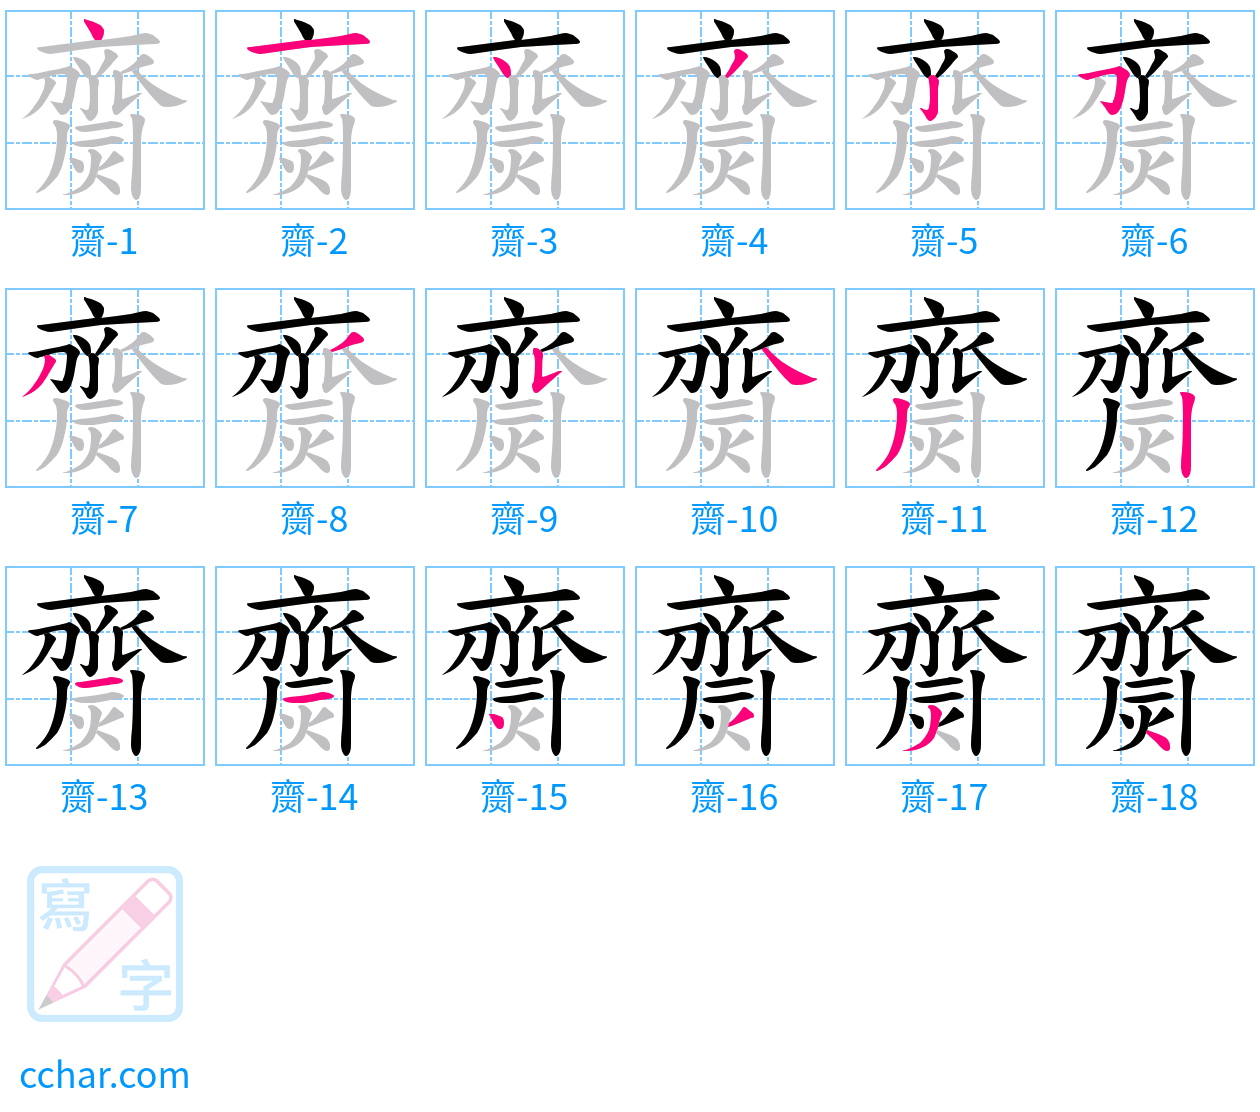 齌 stroke order step-by-step diagram